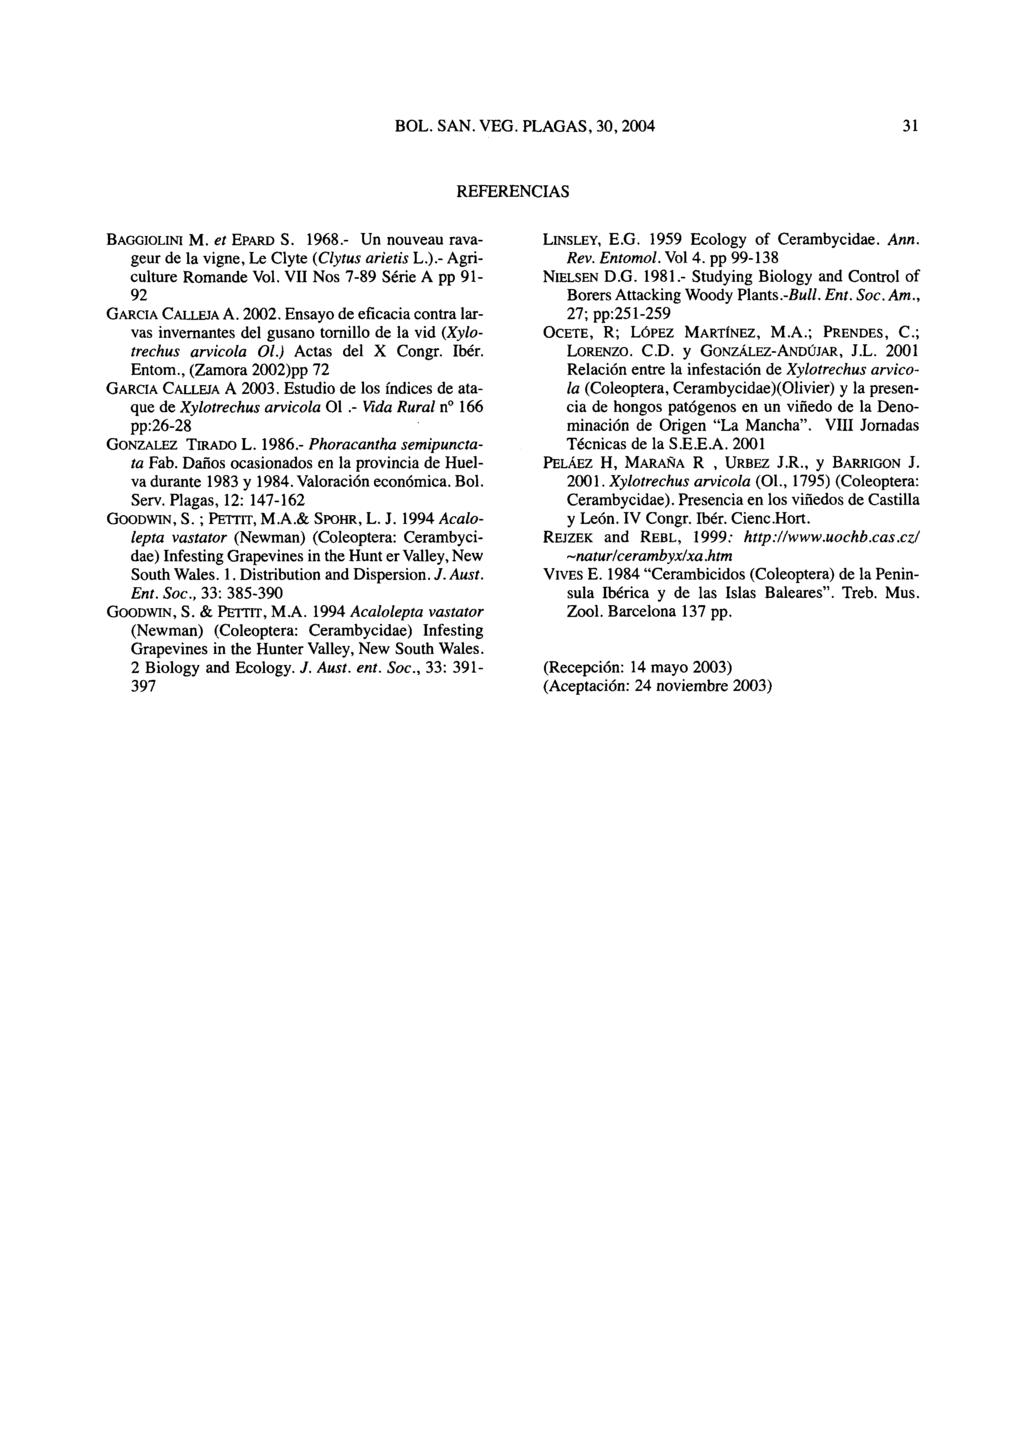 REFERENCIAS BAGGIOLINI M. et EPARD S. 1968.- Un nouveau ravageur de Ia vigne, Le Clyte (Clytus arietis L.).- Agriculture Romande Vol. VII Nos 7-89 Série A pp 91-92 GARCIA CALLEJA A. 2002.